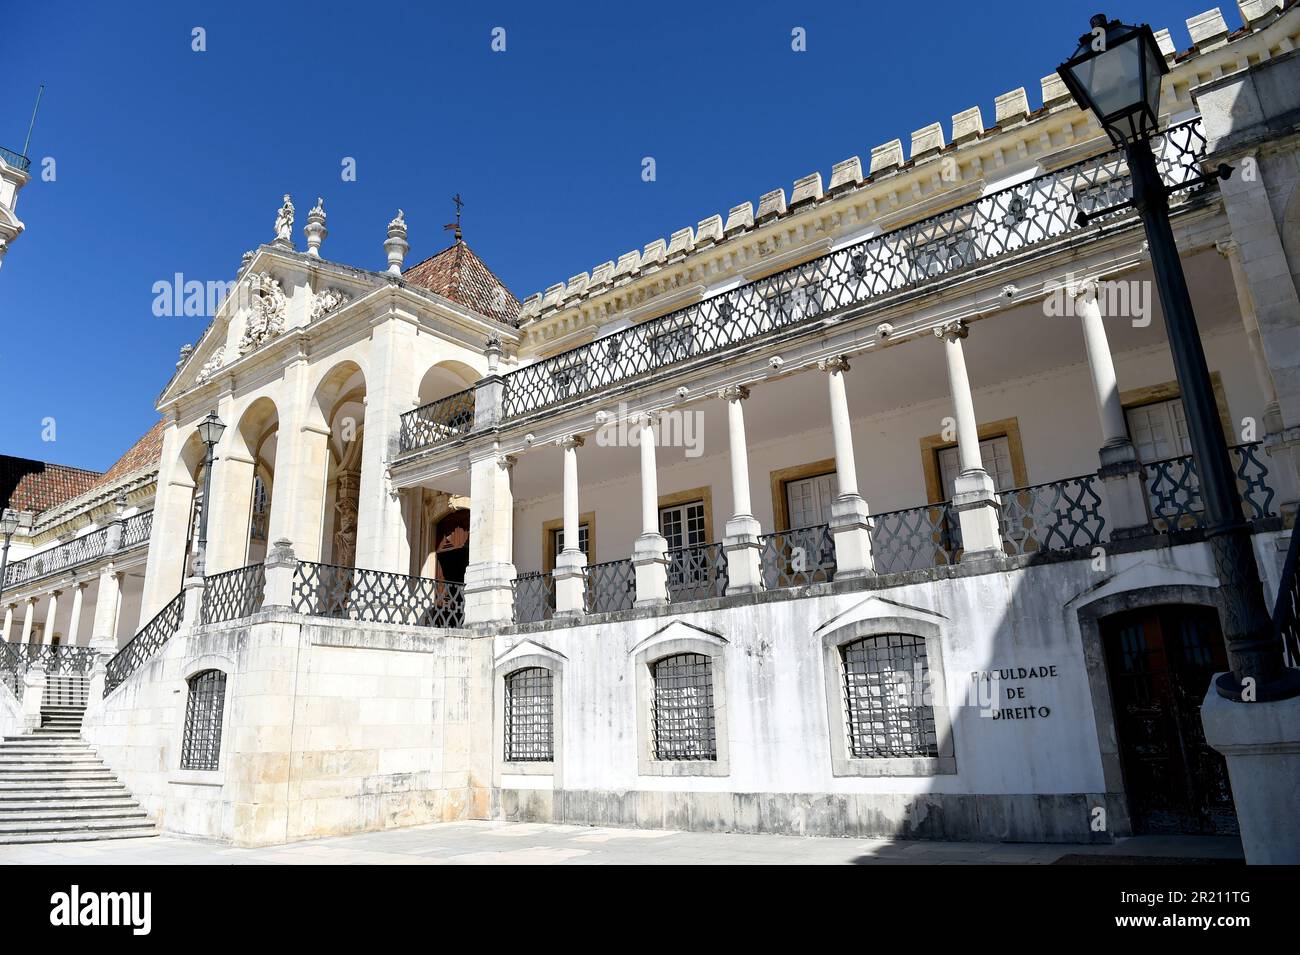 Photographie montrant l'extérieur de l'Université de Coimbra, Coimbra, Portugal. Une université publique portugaise à Coimbra, elle a été créée en 1290 à Lisbonne et a été réinstallée jusqu'à ce qu'elle soit transférée de façon permanente à son emplacement actuel en 1537. Banque D'Images